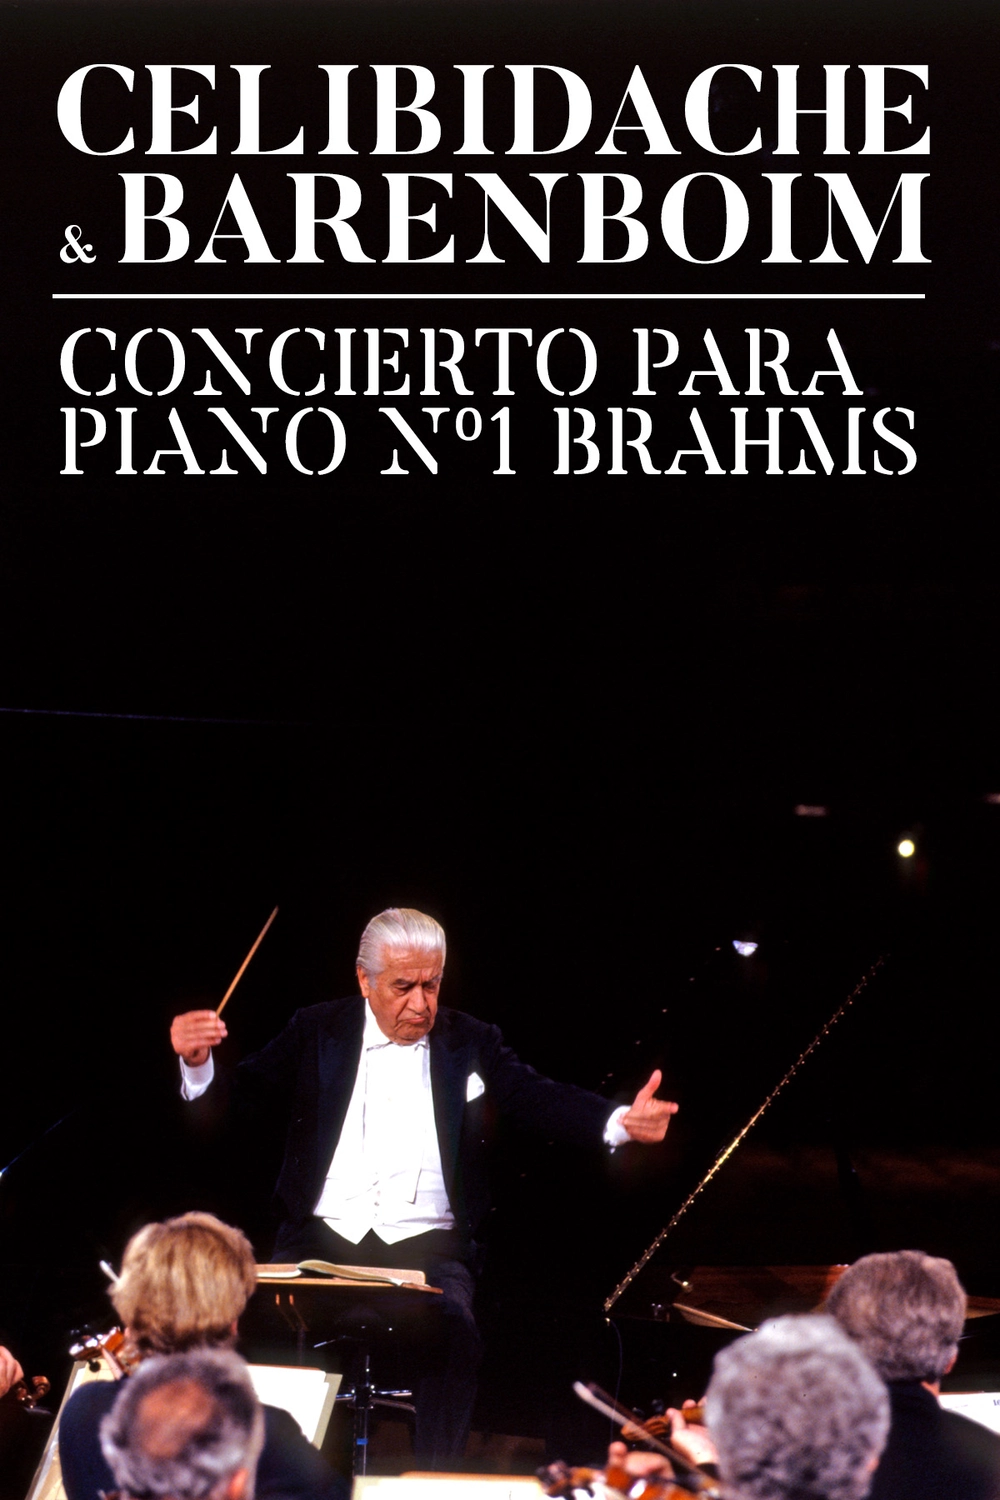 Todavía ANTES DE CRISTO. Himno Barenboim y Celibidache, Concierto para piano nº1 de Brahms - Filmin